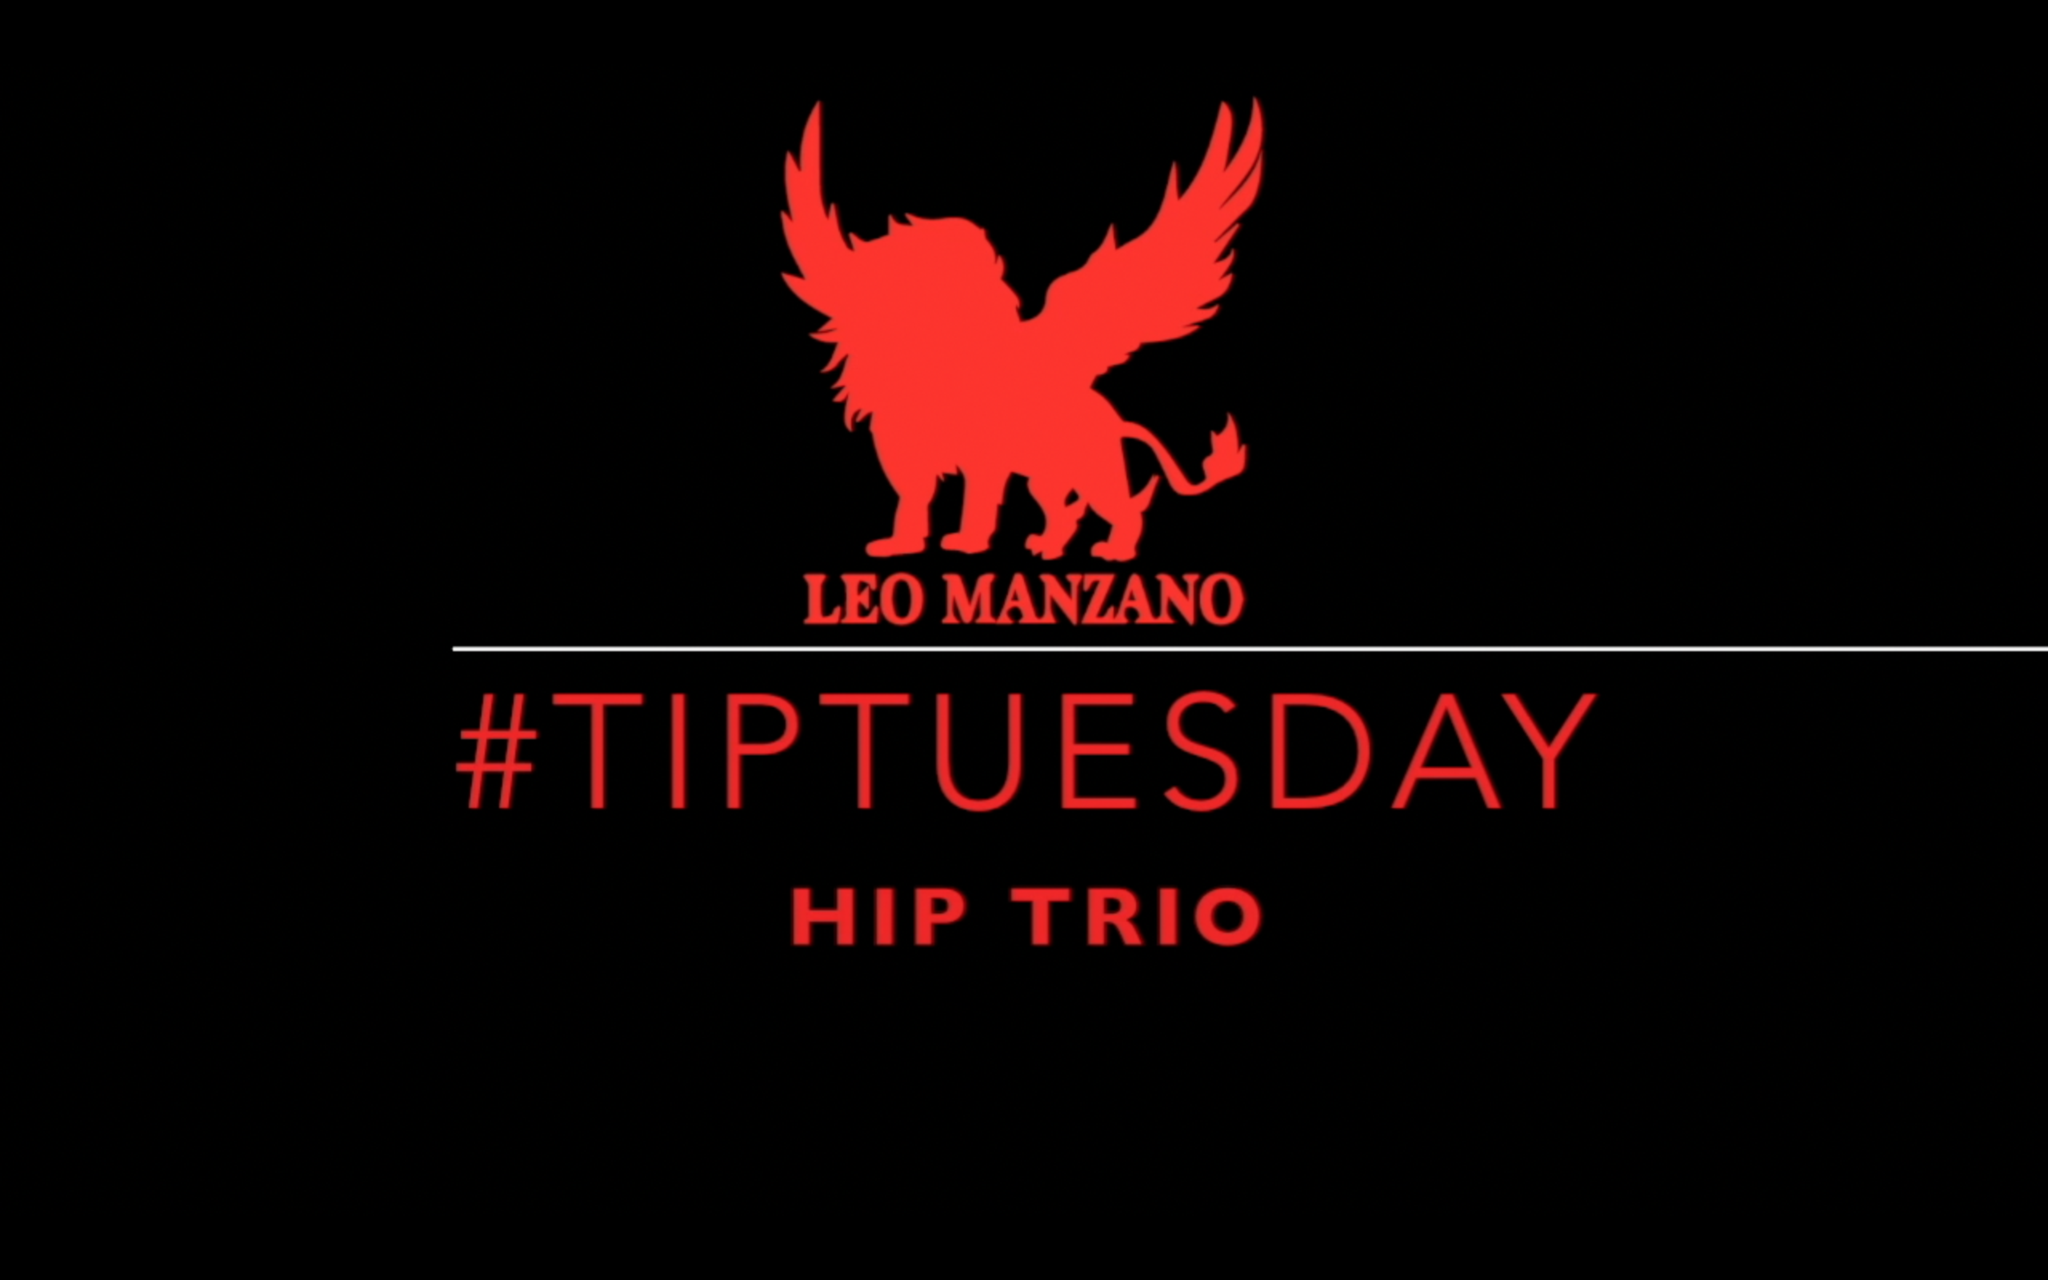 TipTuesday "Hip Trio" 1.31.17